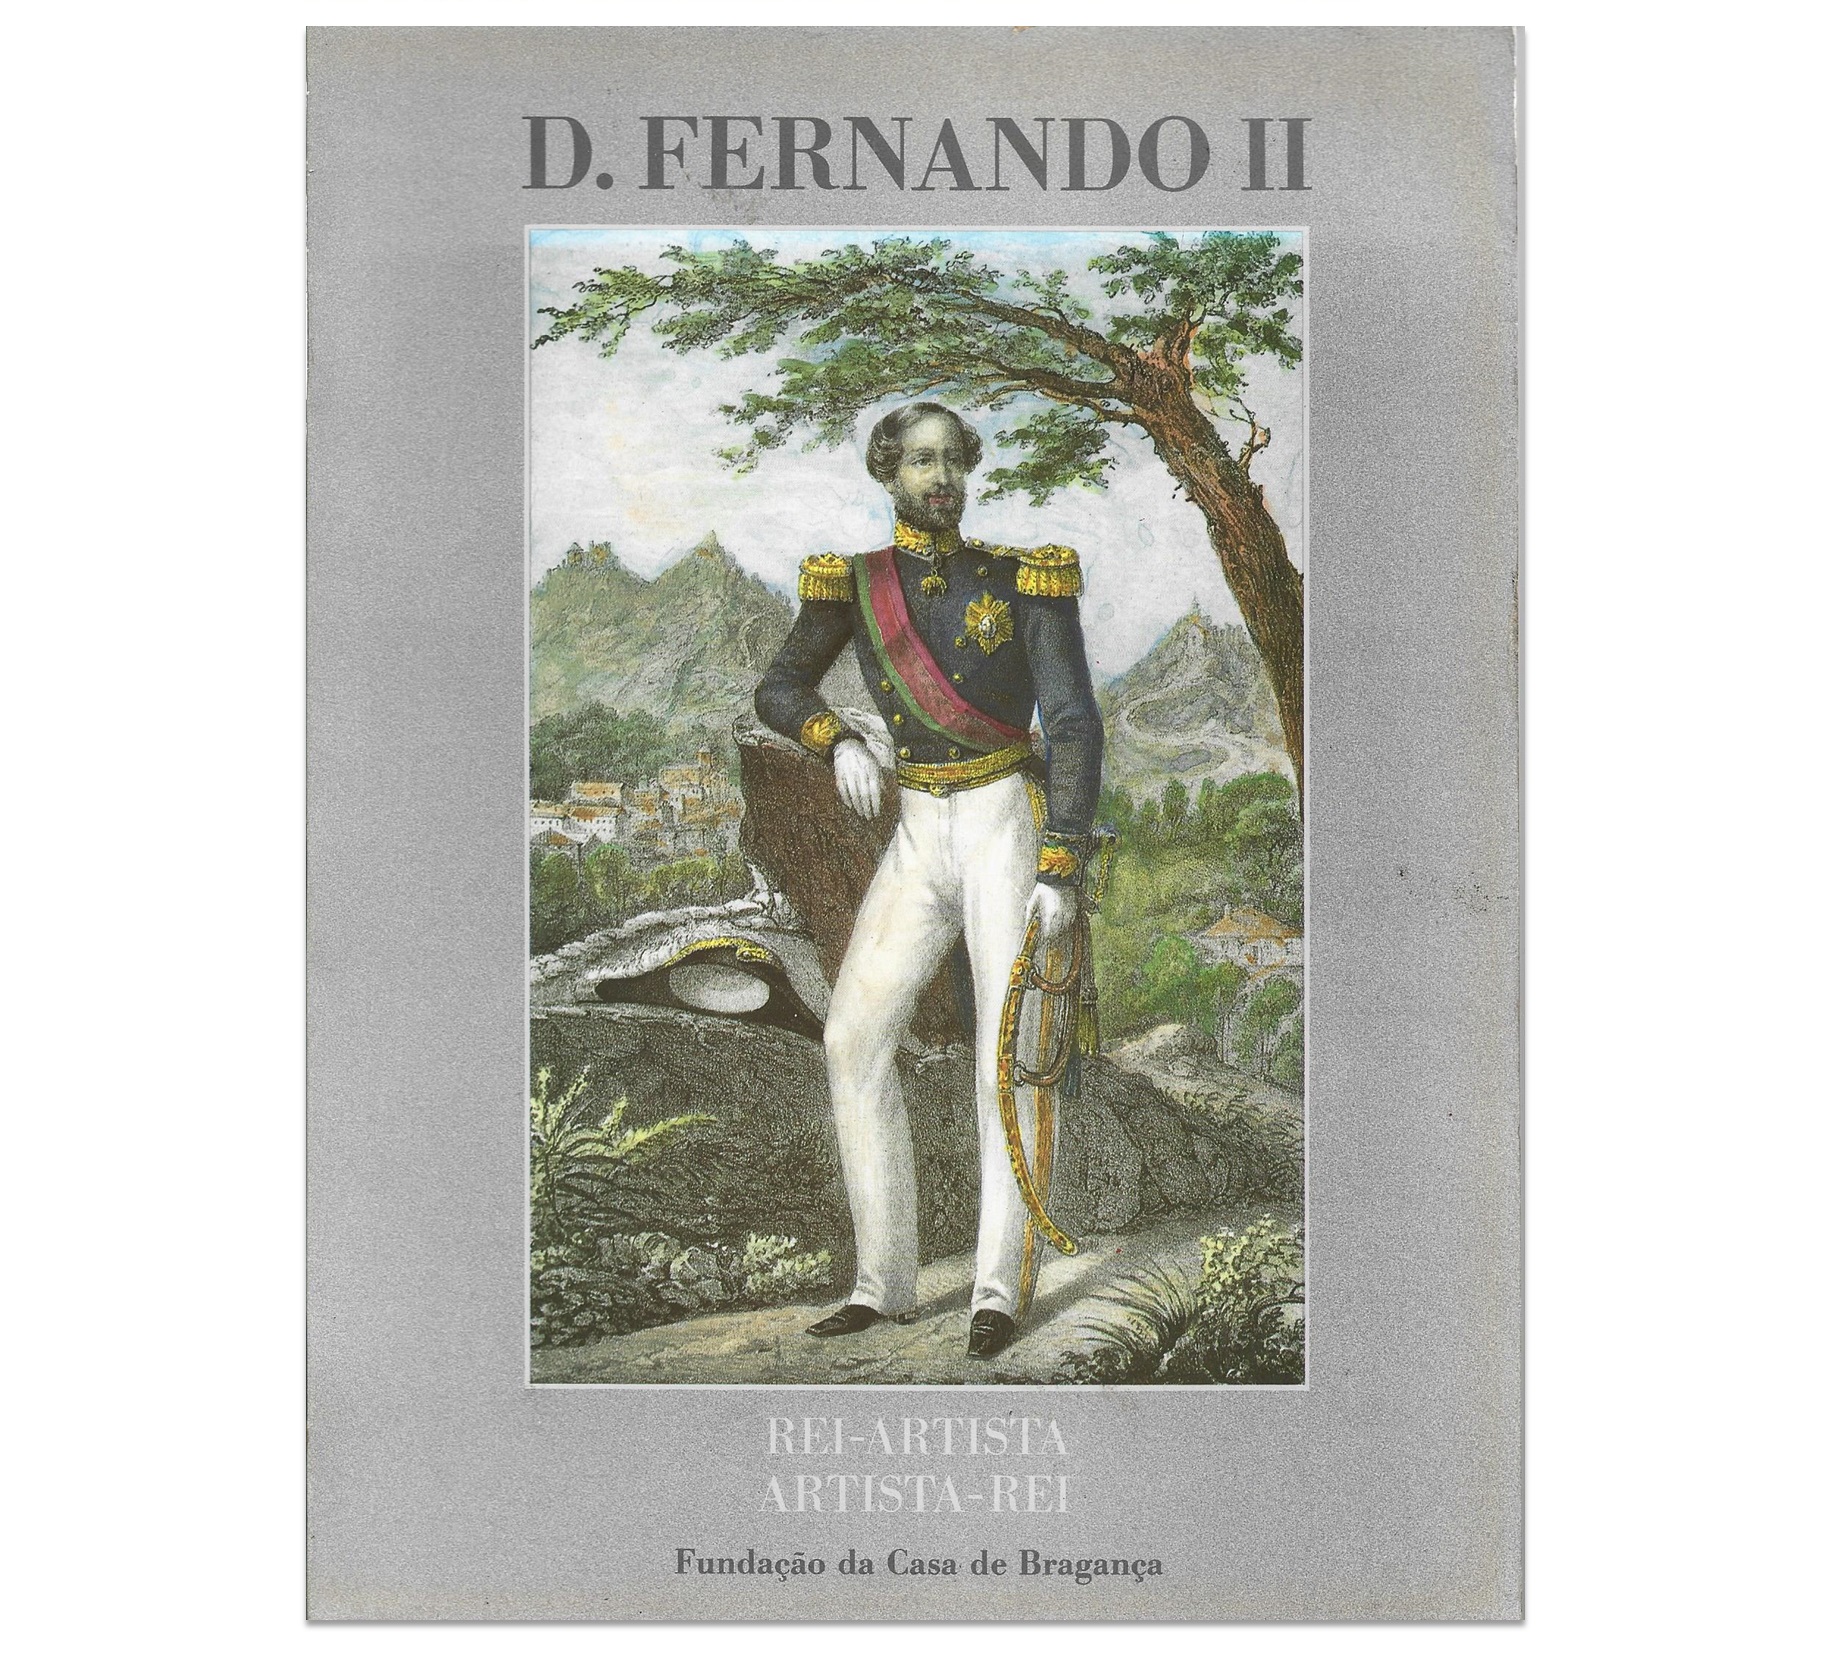 D. FERNANDO II. REI-ARTISTA. ARTISTA-REI